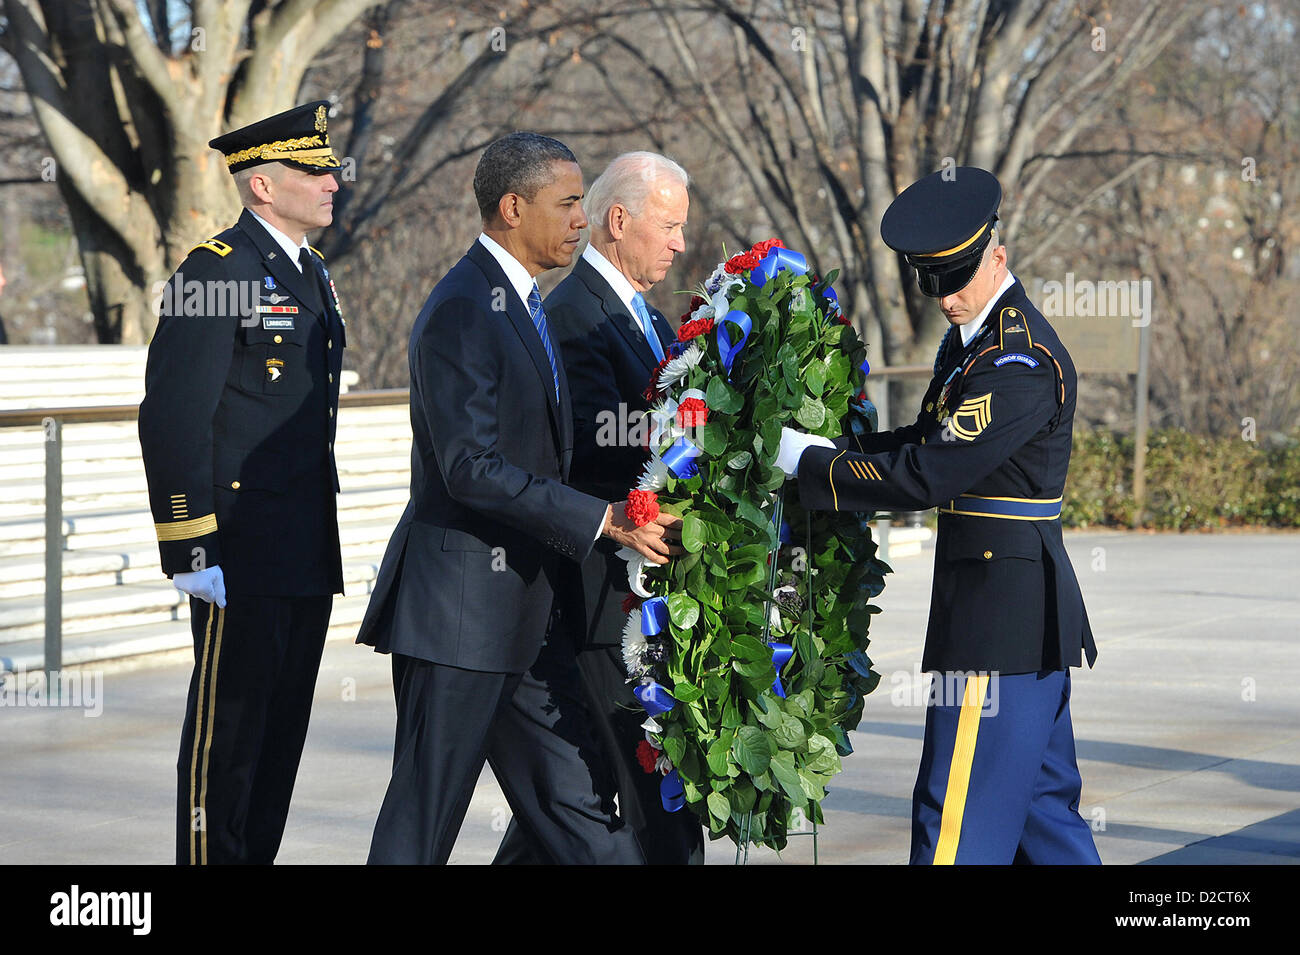 Präsident Barack Obama und Vize-Präsident Joe Biden legen einen Kranz am Grab der unbekannten 20. Januar 2013 am Nationalfriedhof Arlington, VA. Es ist eine Tradition für den Präsidenten, die unbekannten Soldaten am Eröffnungstag zu Ehren. Stockfoto